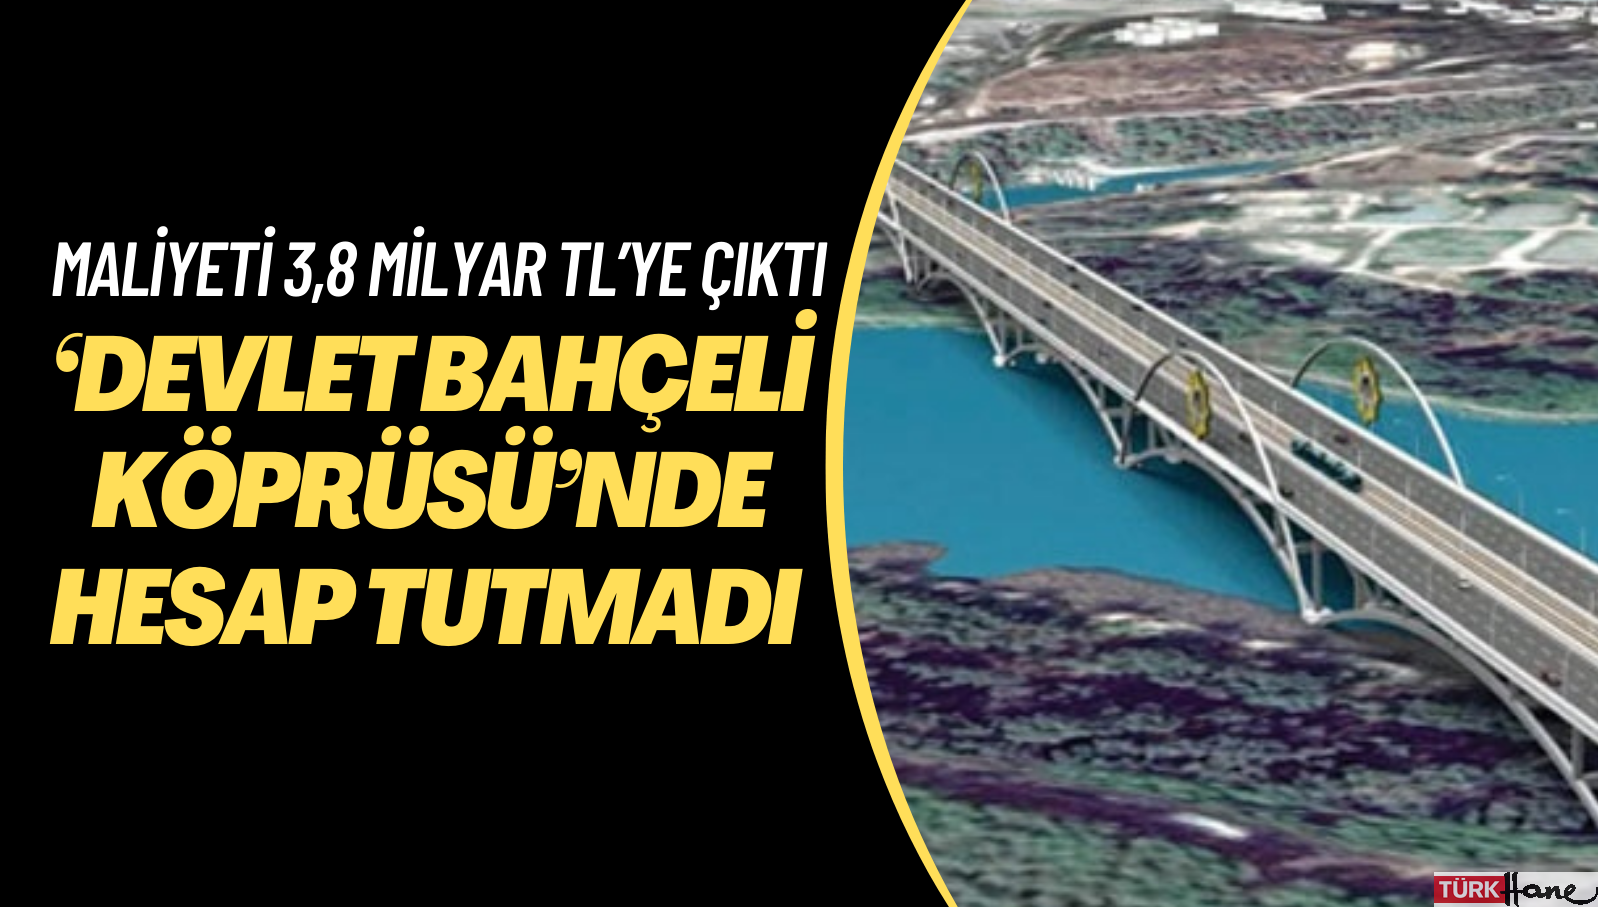 ‘Devlet Bahçeli Köprüsü’nde hesaplar tutmadı: Maliyeti 215 milyondan 3,8 milyar TL’ye çıktı